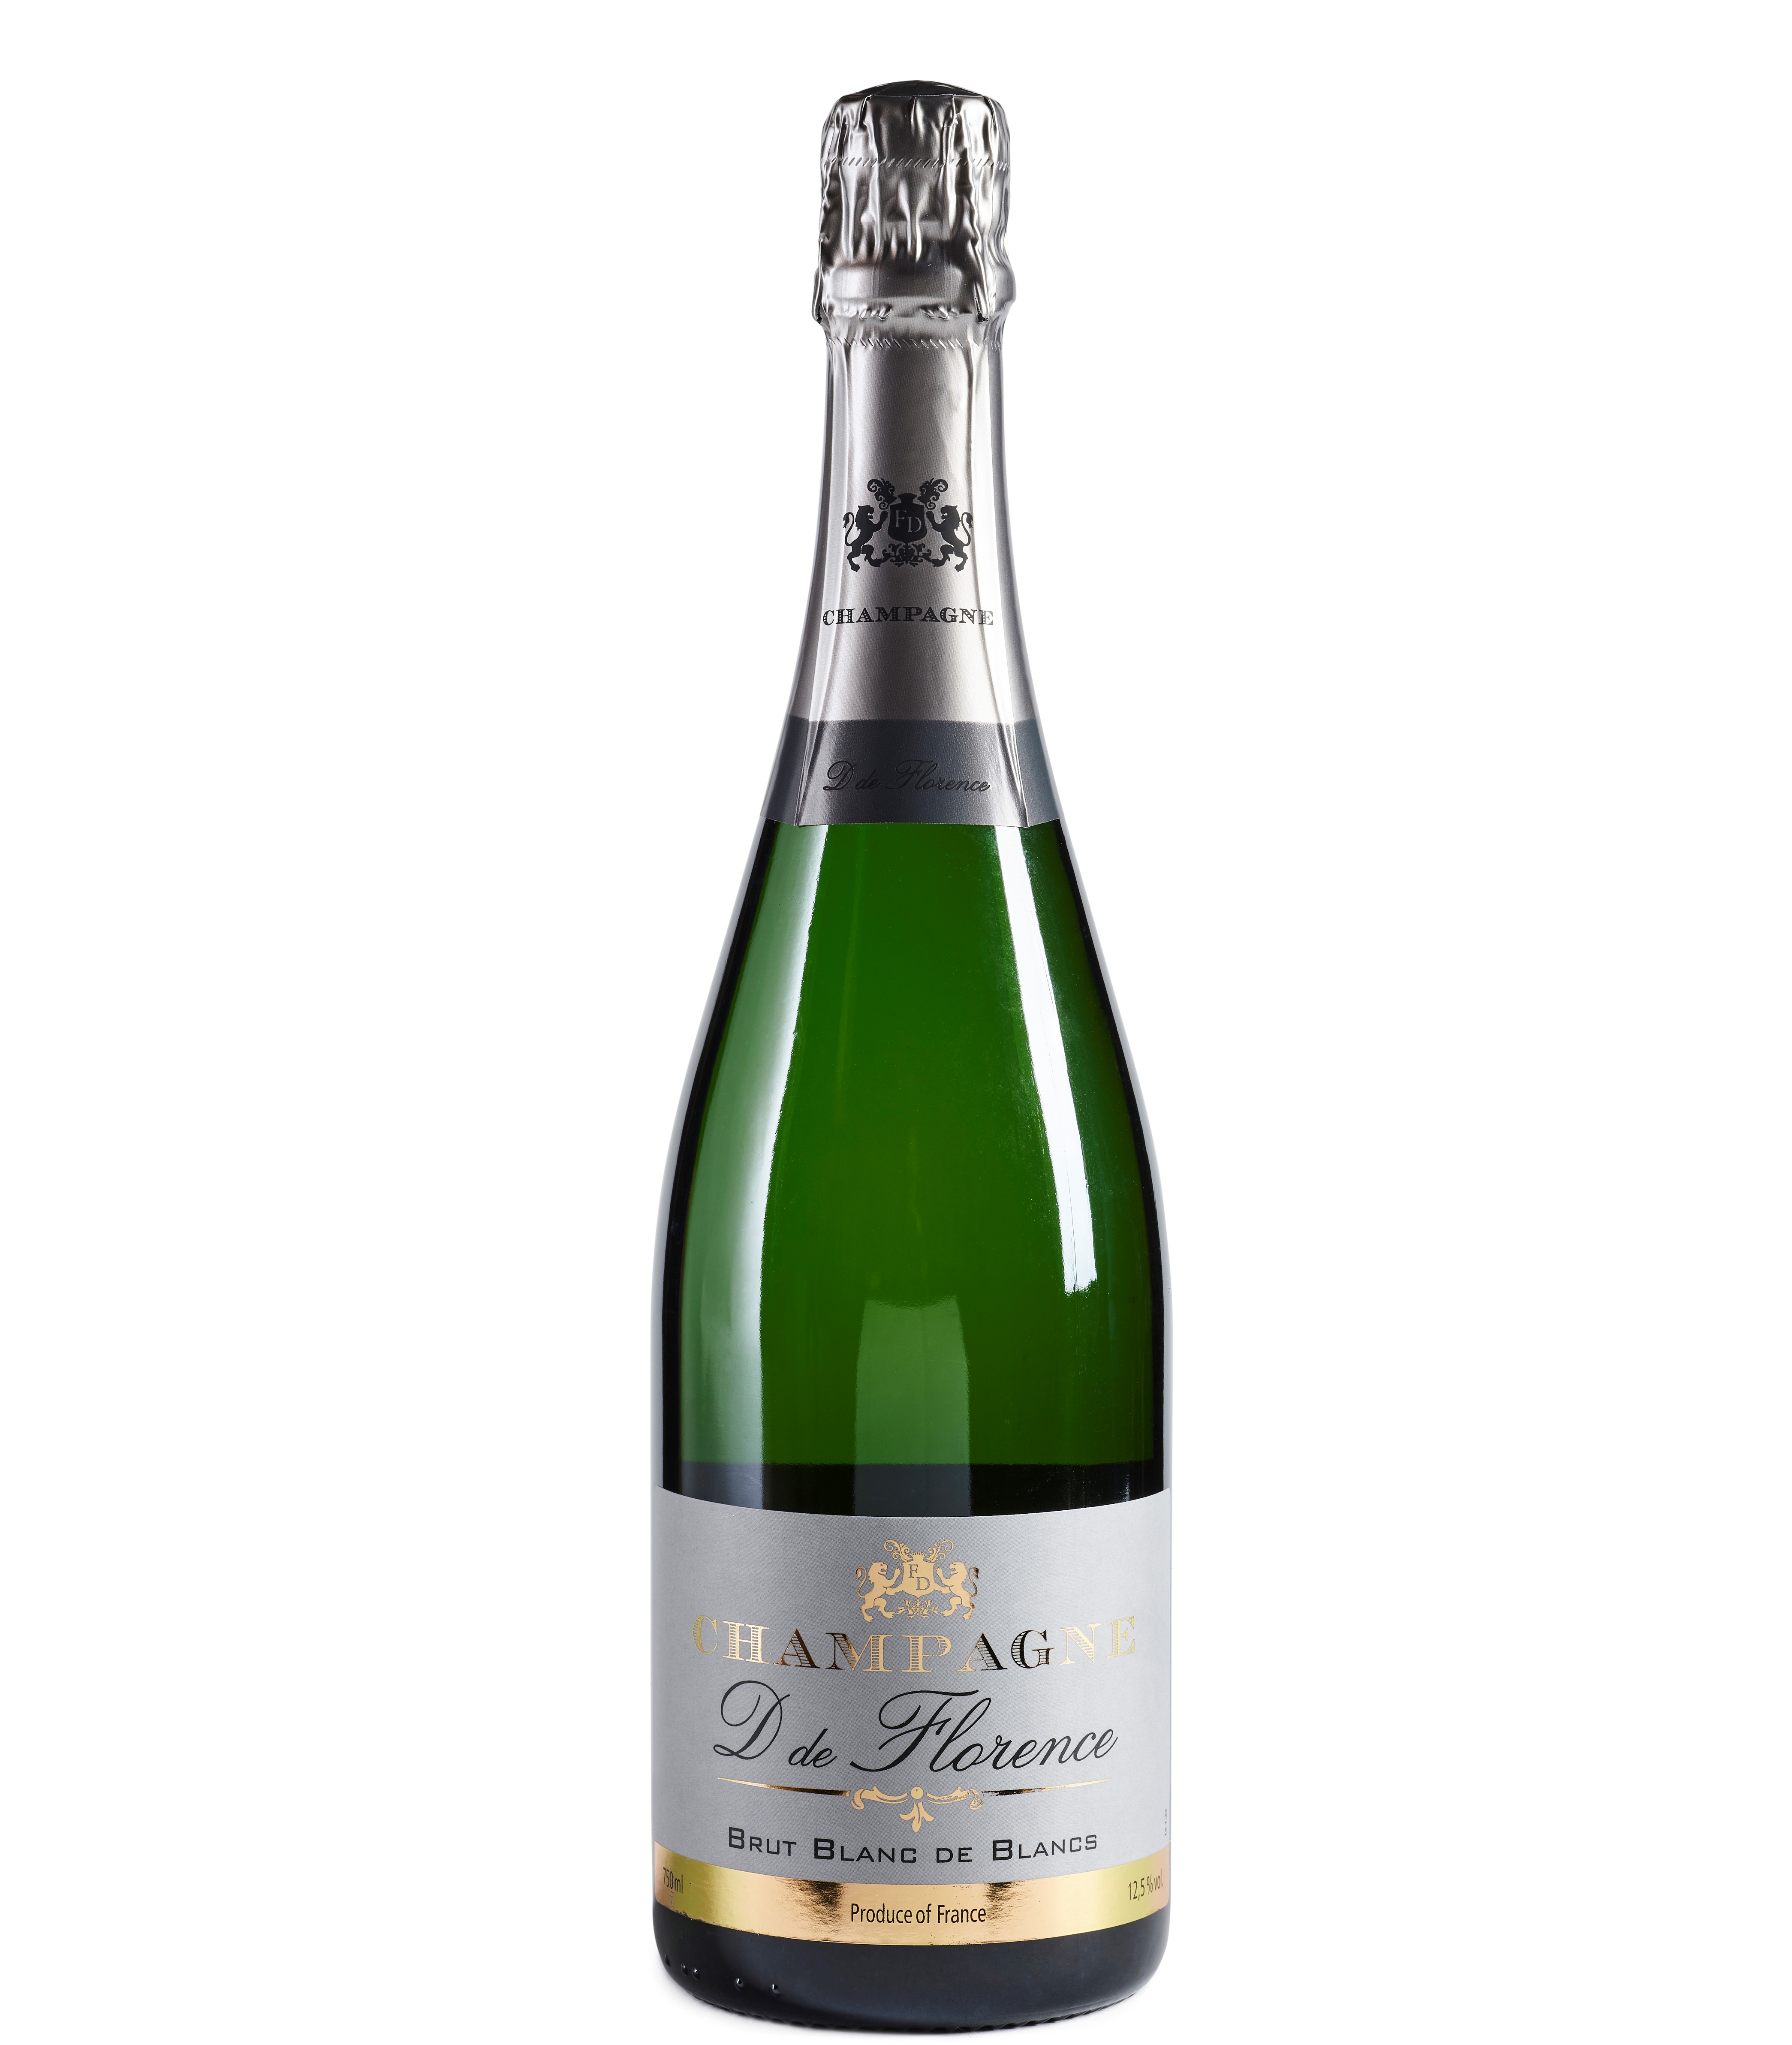 Champagne D de Florence Blanc de Blancs 12.5% 75cl